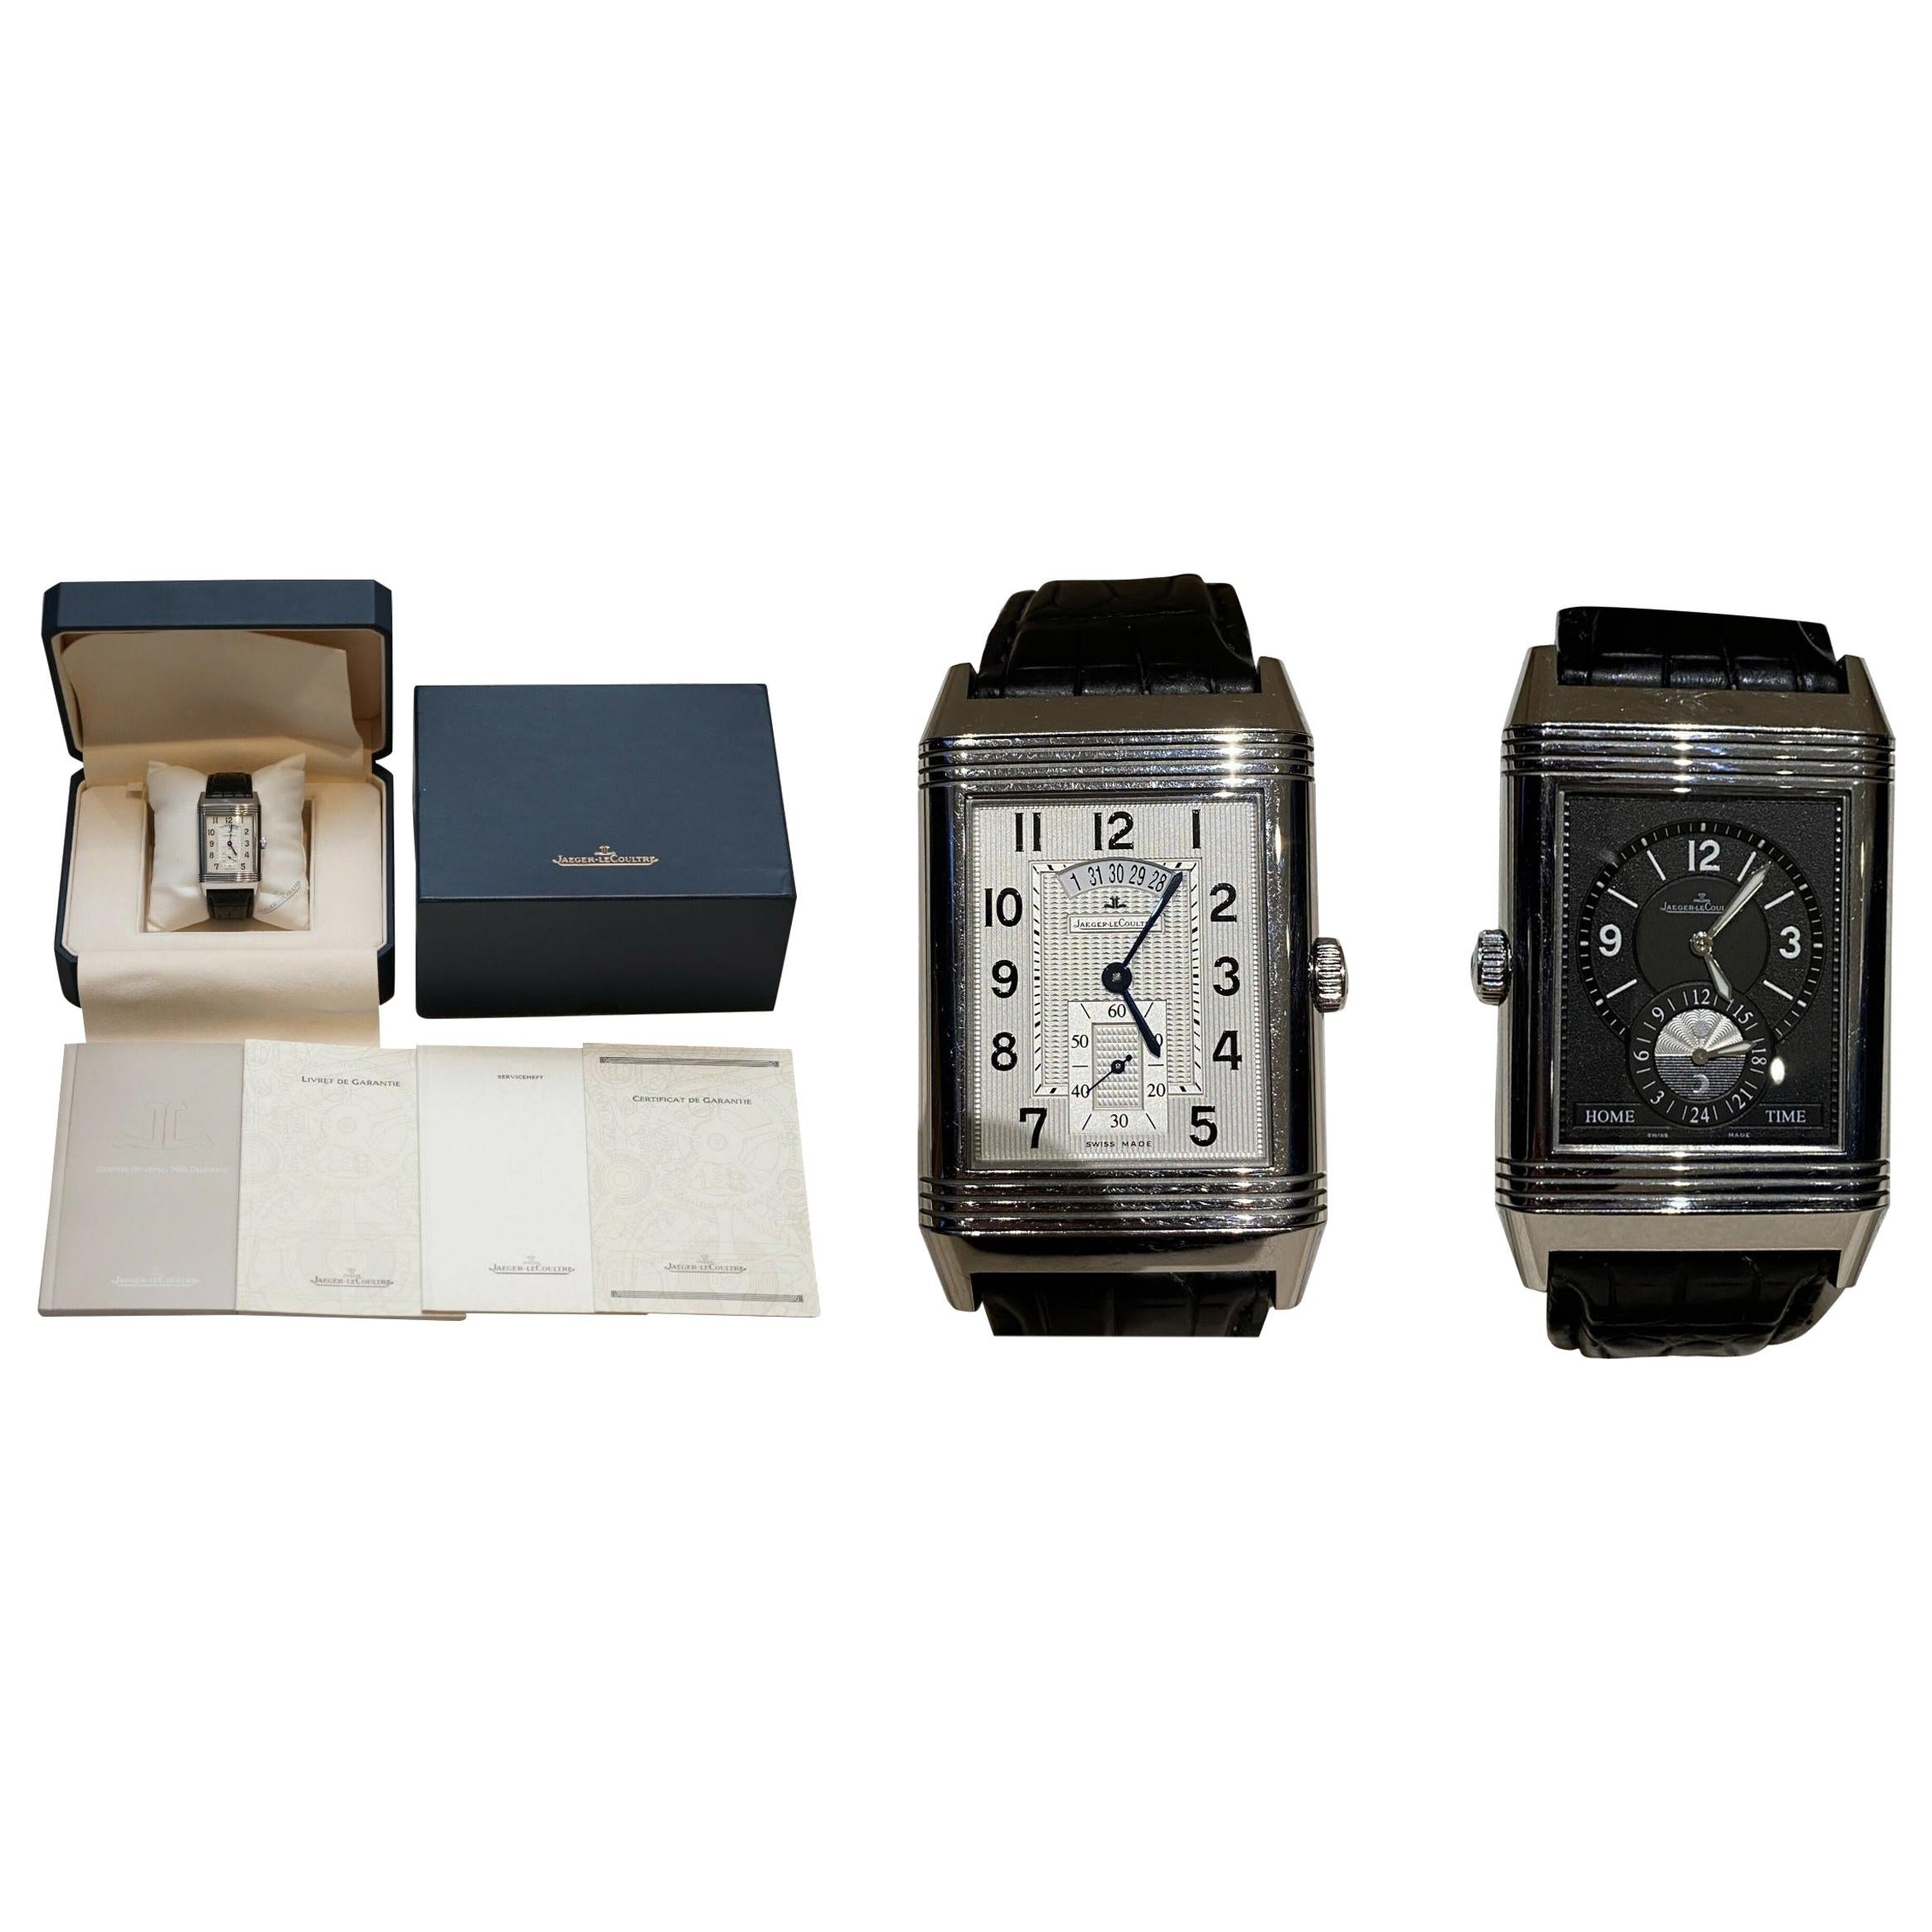 Ltd Edition Jager Lecoultre Grand Reverso 986 Duodate doppelseitige Armbanduhr im Angebot